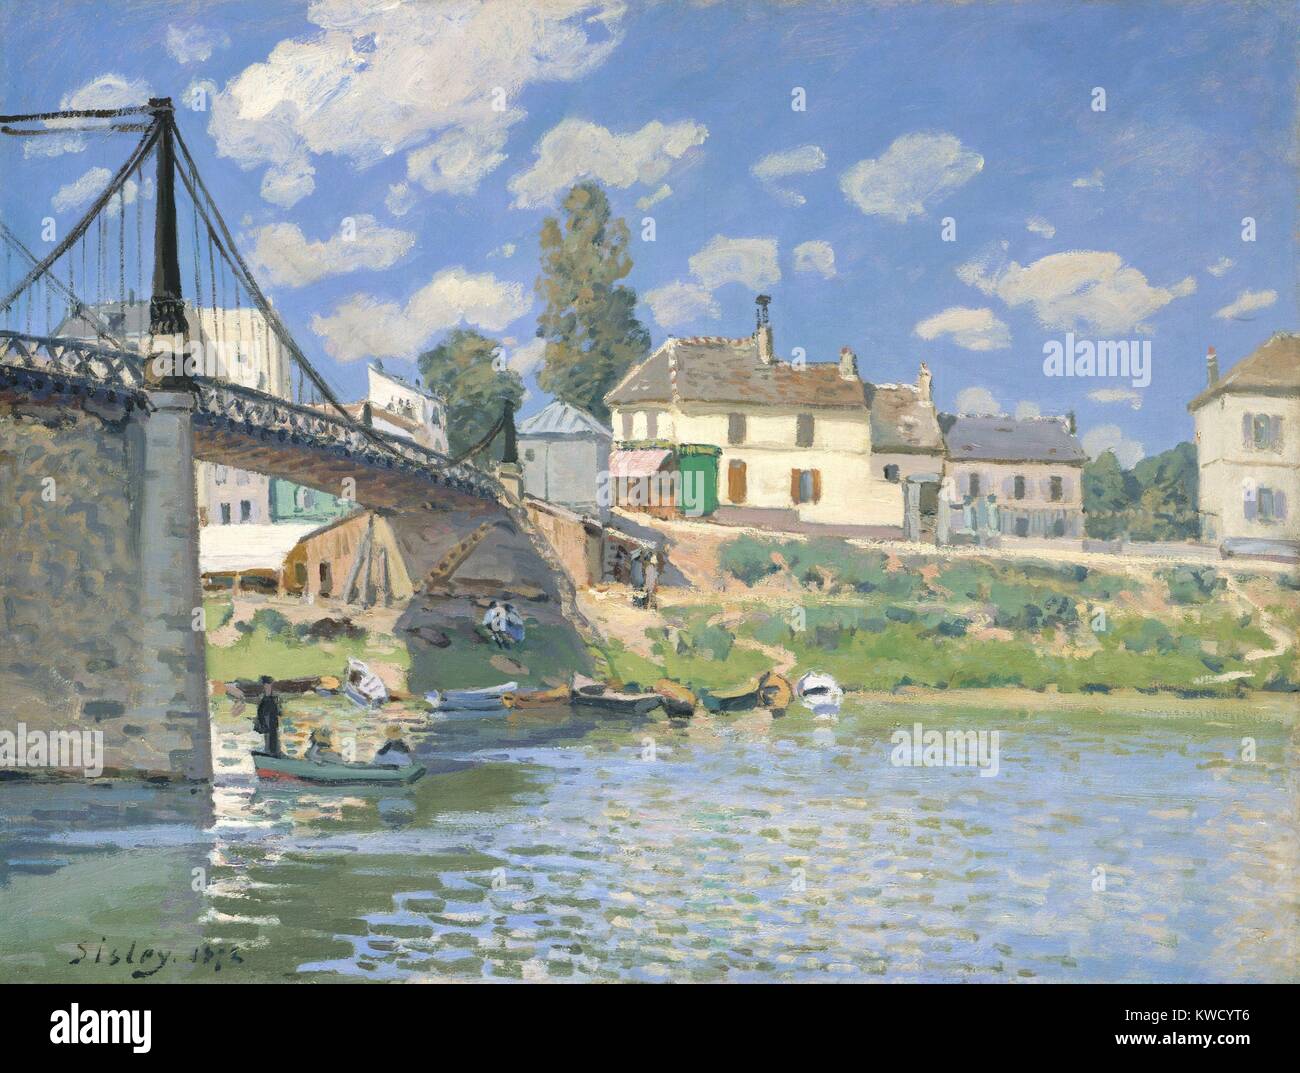 Die Brücke von Villeneuve-la-Garenne, von Alfred Sisley, 1872, französischer Impressionisten Öl Malerei. Sisley malte diese moderne Brücke mit dem Pariser Vorort St. Denis in einem hellen Palette mit Flachbild Pinselstriche, die Reflexionen auf dem Wasser (BSLOC 2017 3 126) Stockfoto